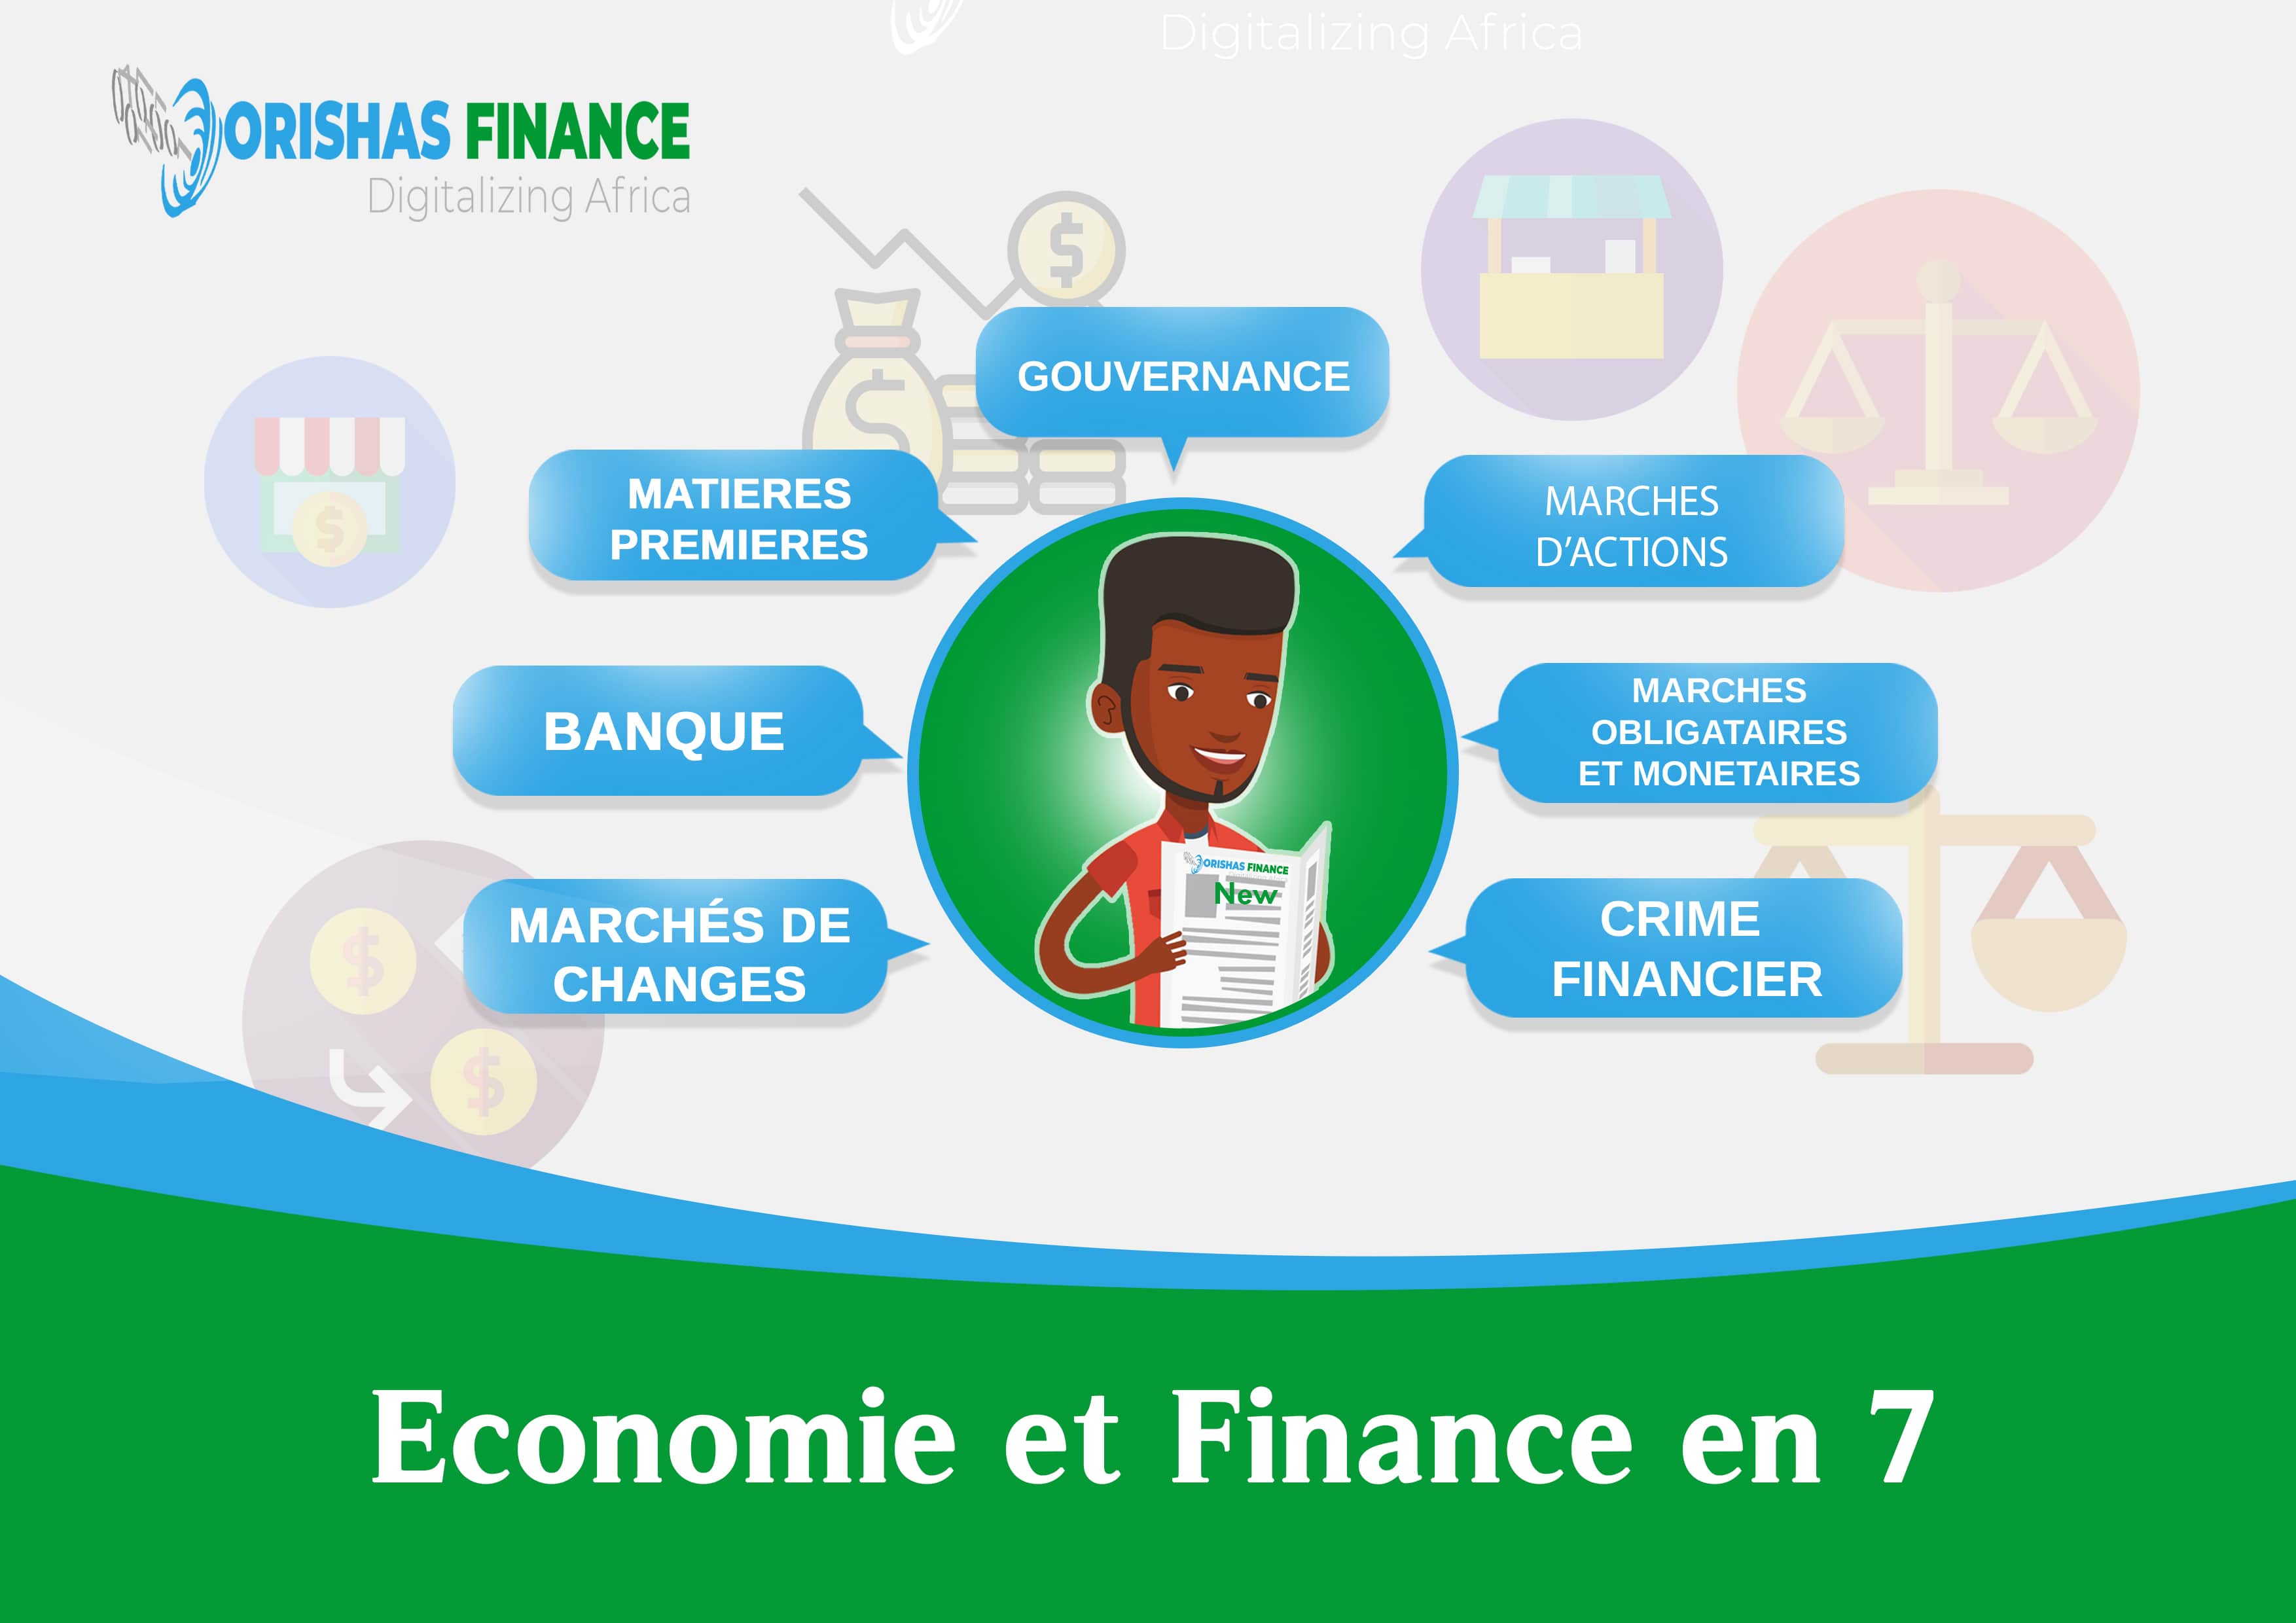  Economie et Finance en 7 du 22 au 26 Mars 2021 